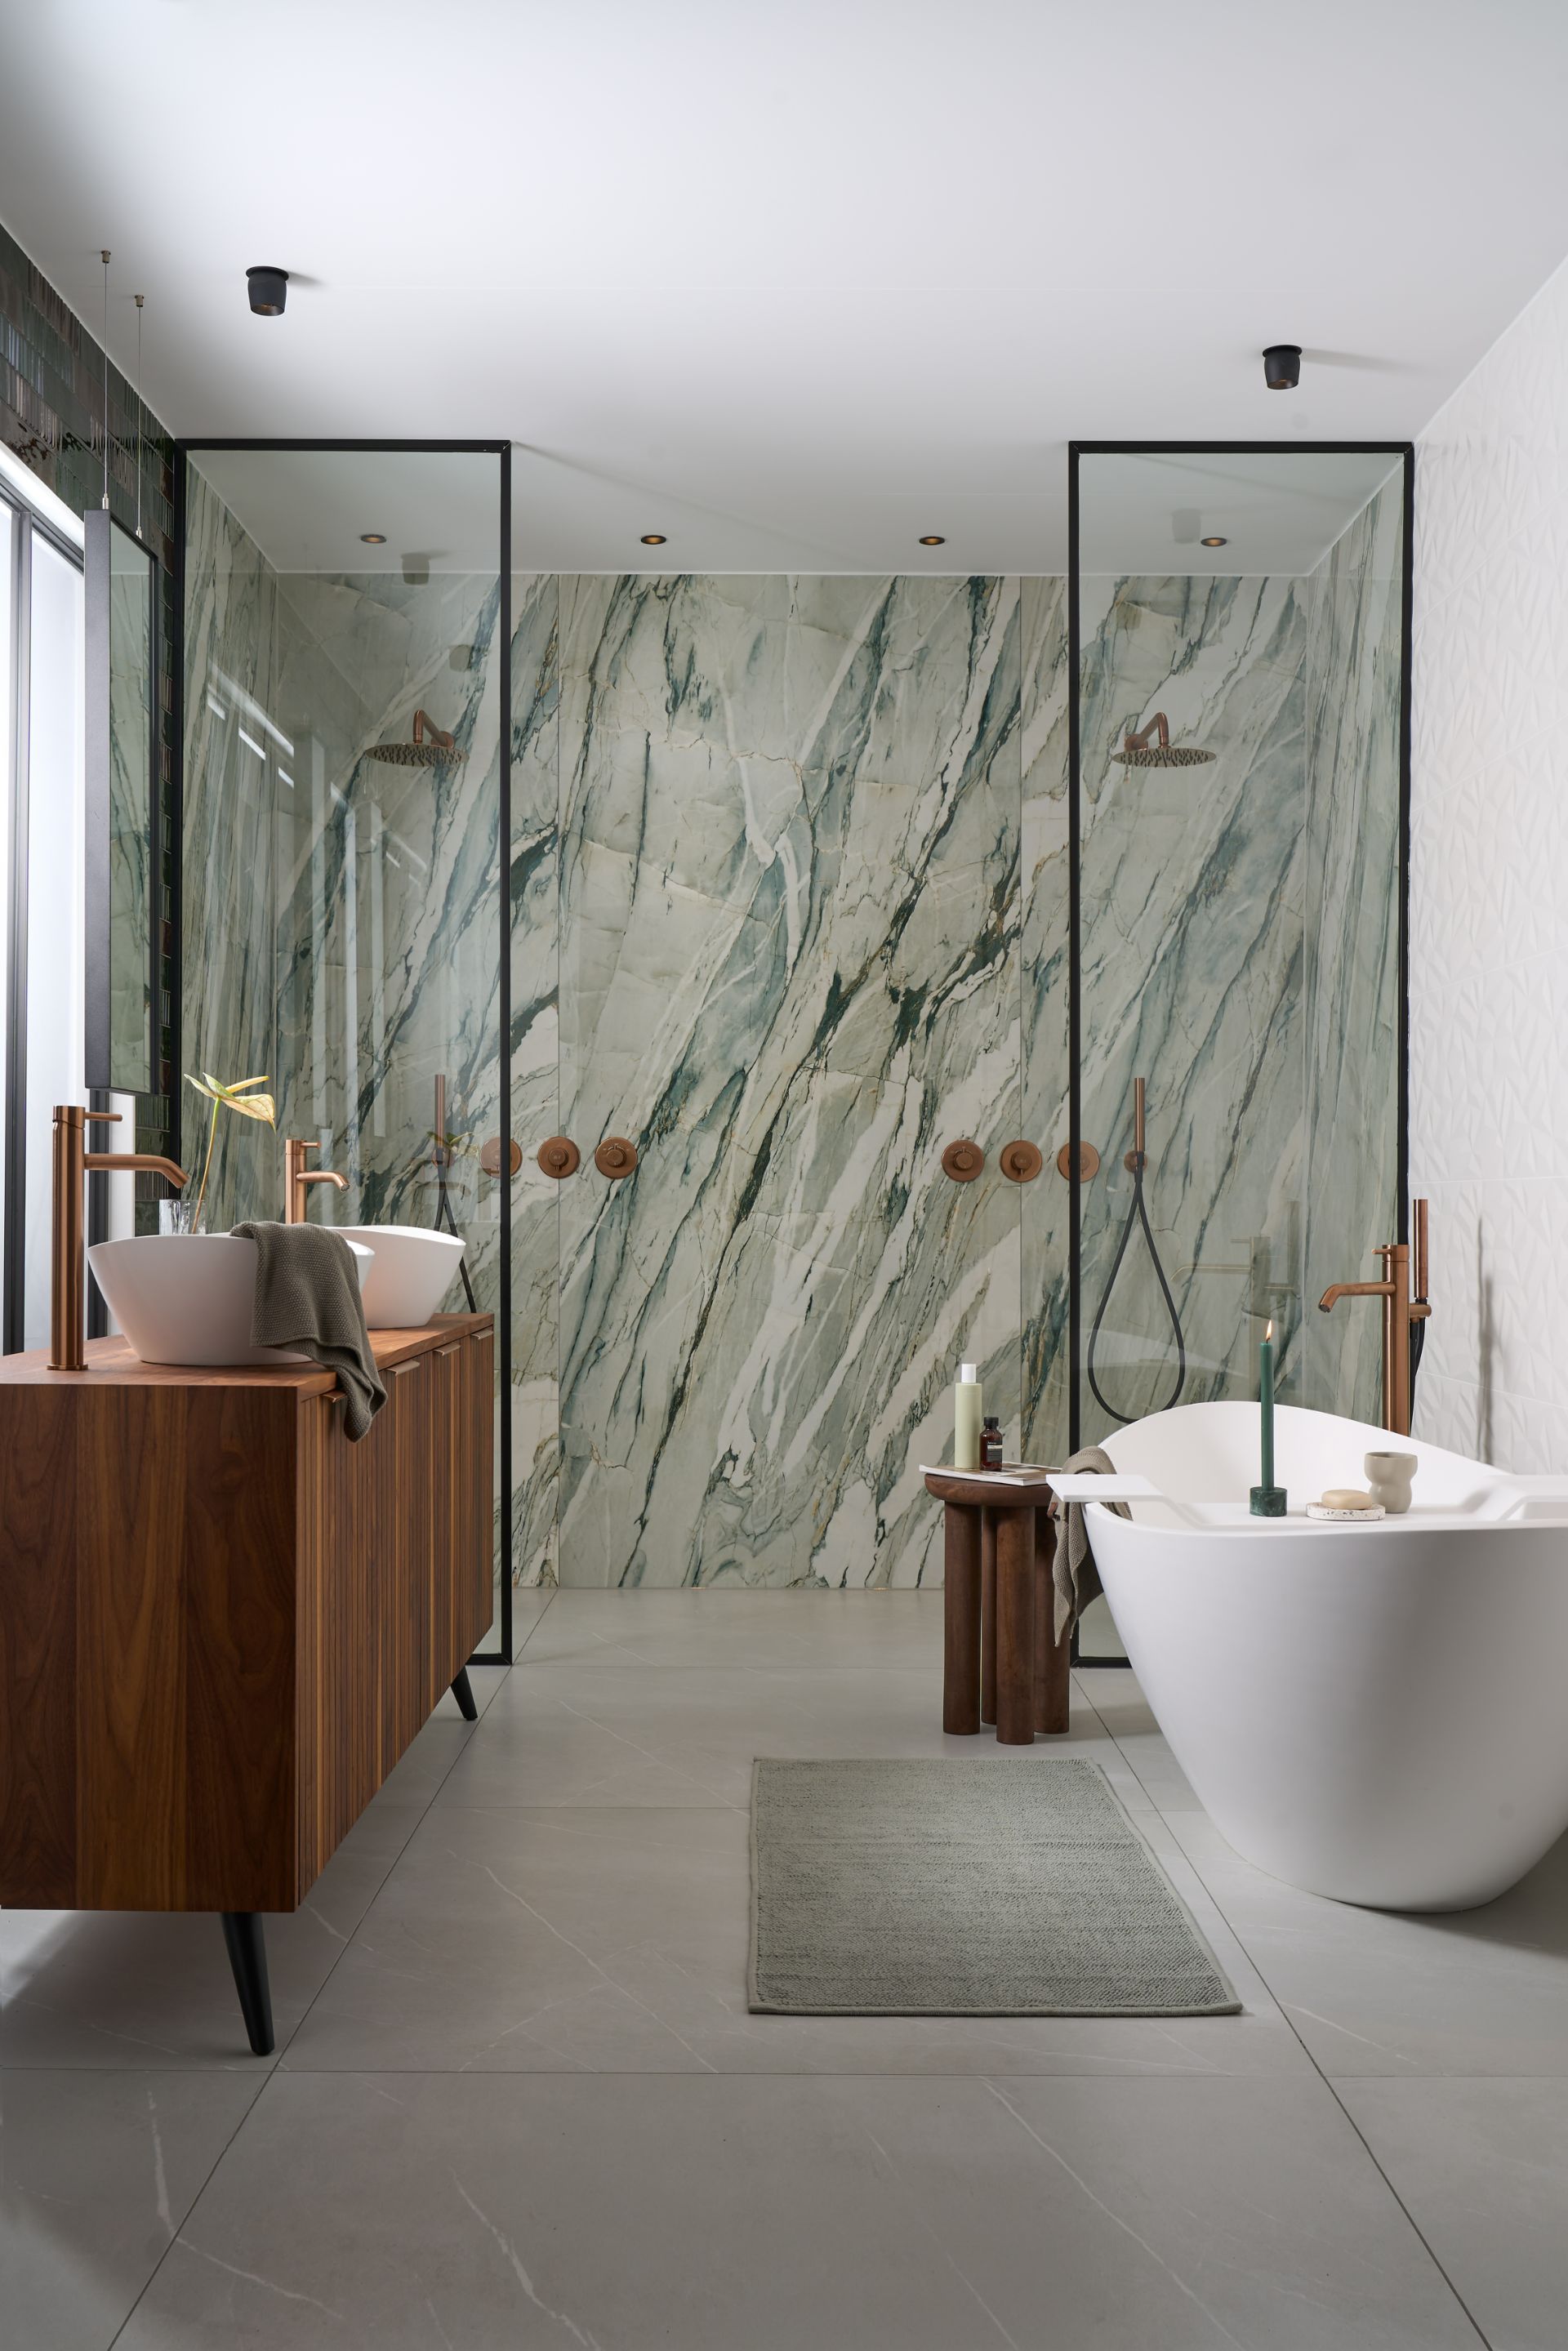 Foto: groene tegel showroom badkamer   eerste kamer badkamers   007